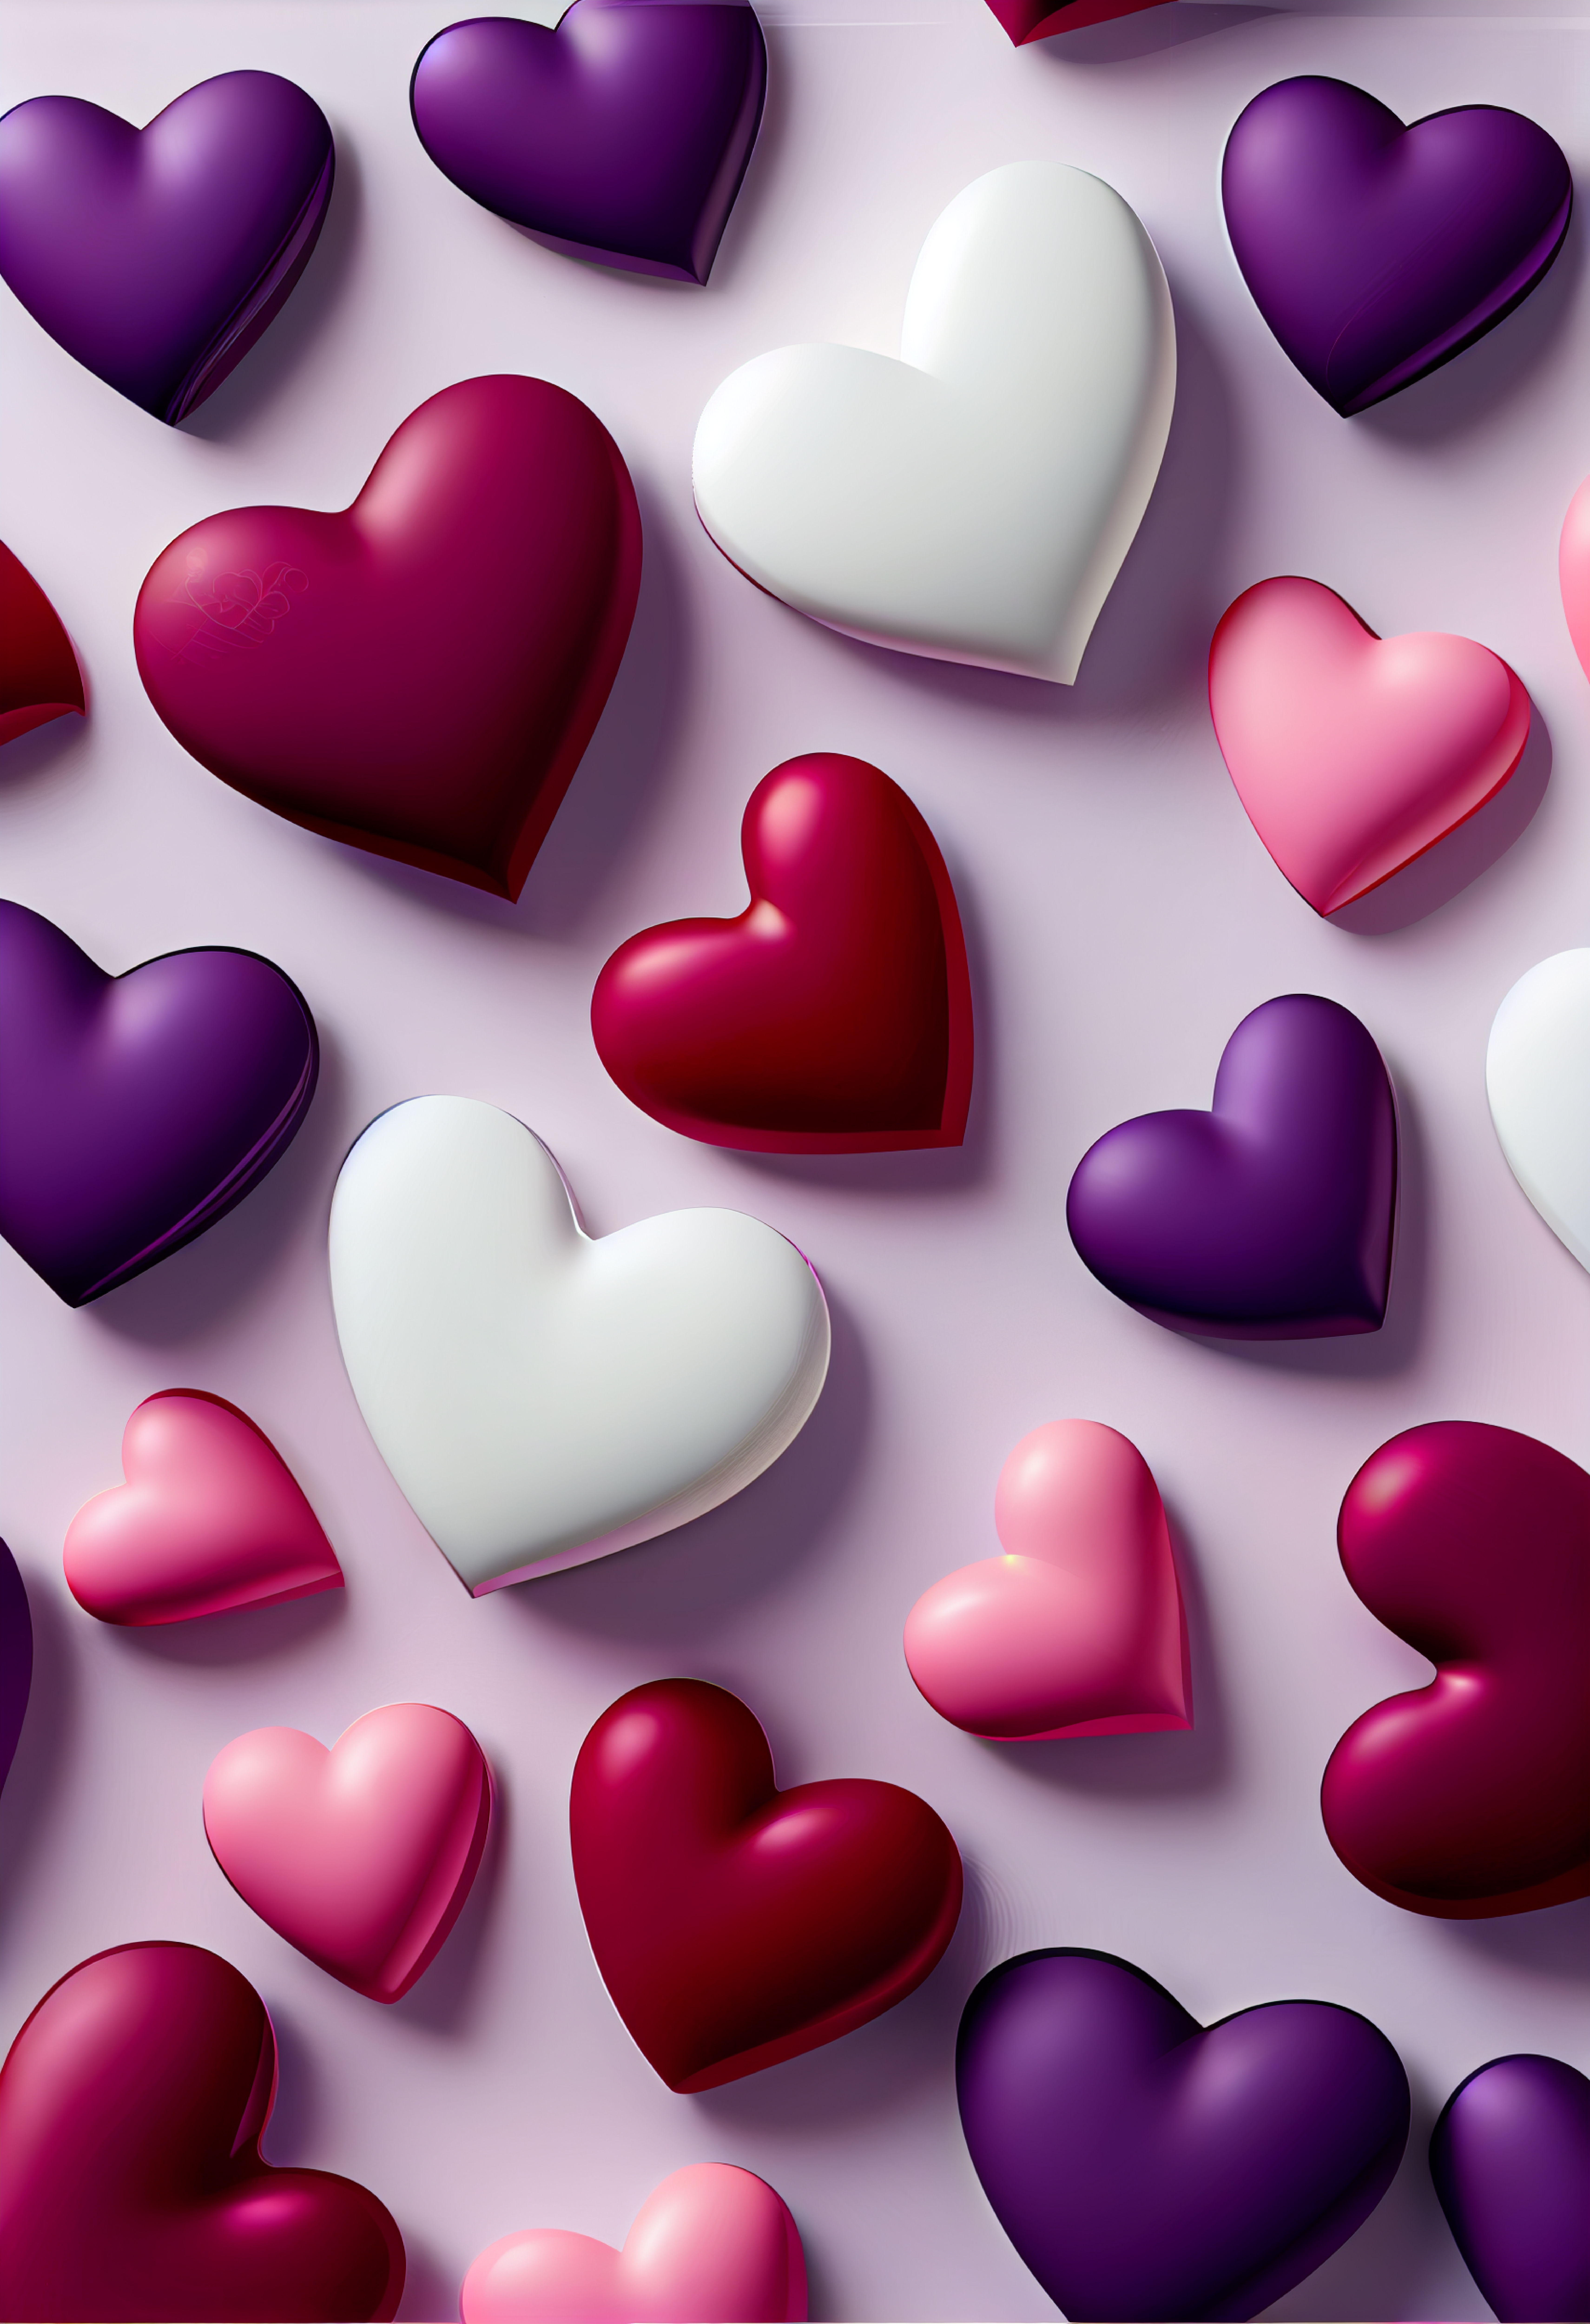 aesthetic purple heart wallpaper | Purple wallpaper iphone, Heart iphone  wallpaper, Heart wallpaper